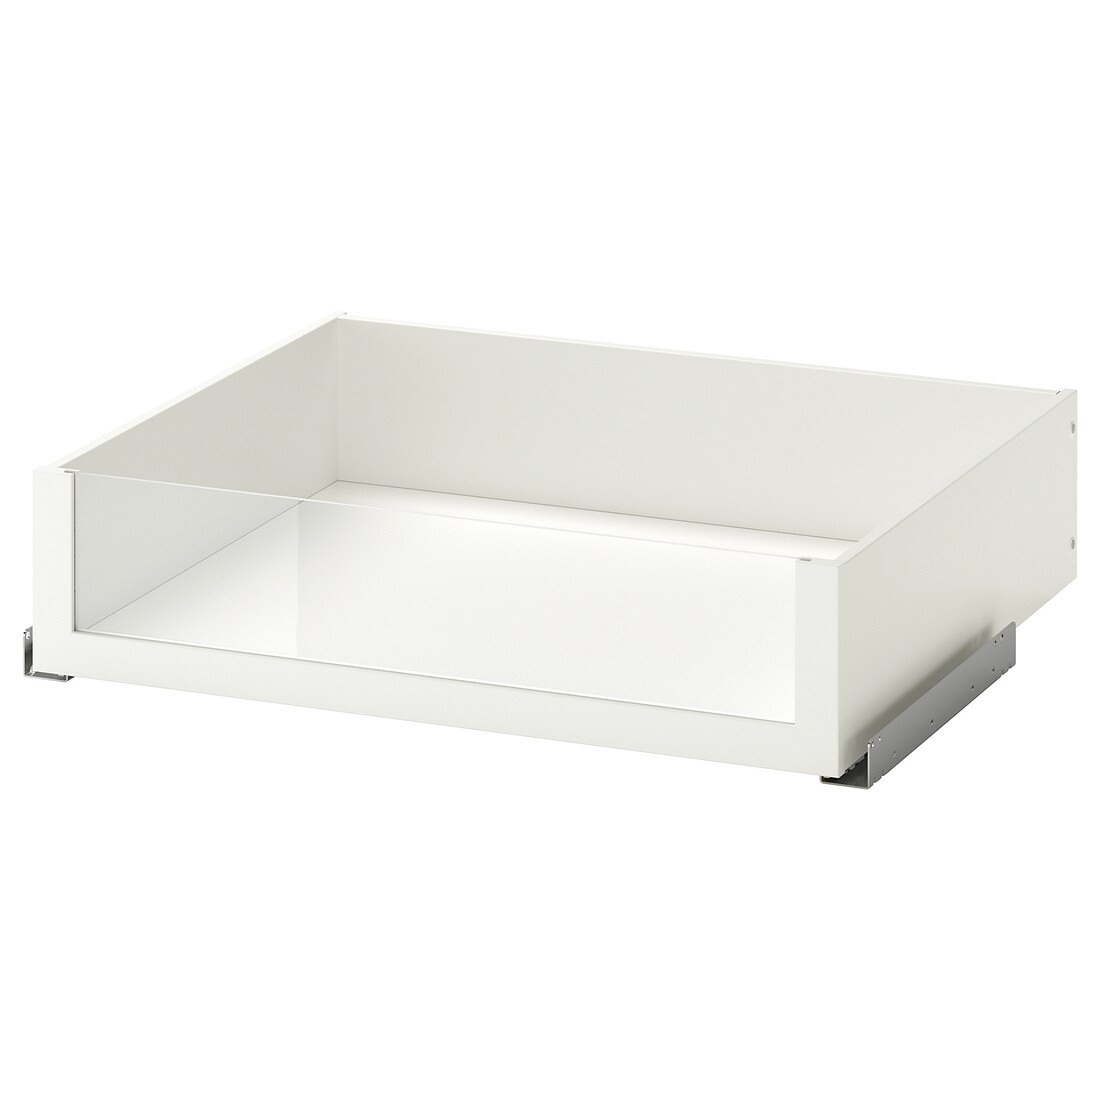 IKEA KOMPLEMENT КОМПЛИМЕНТ Ящик со стеклянной фронтальной панелью, белый, 75x58 см 10246695 102.466.95